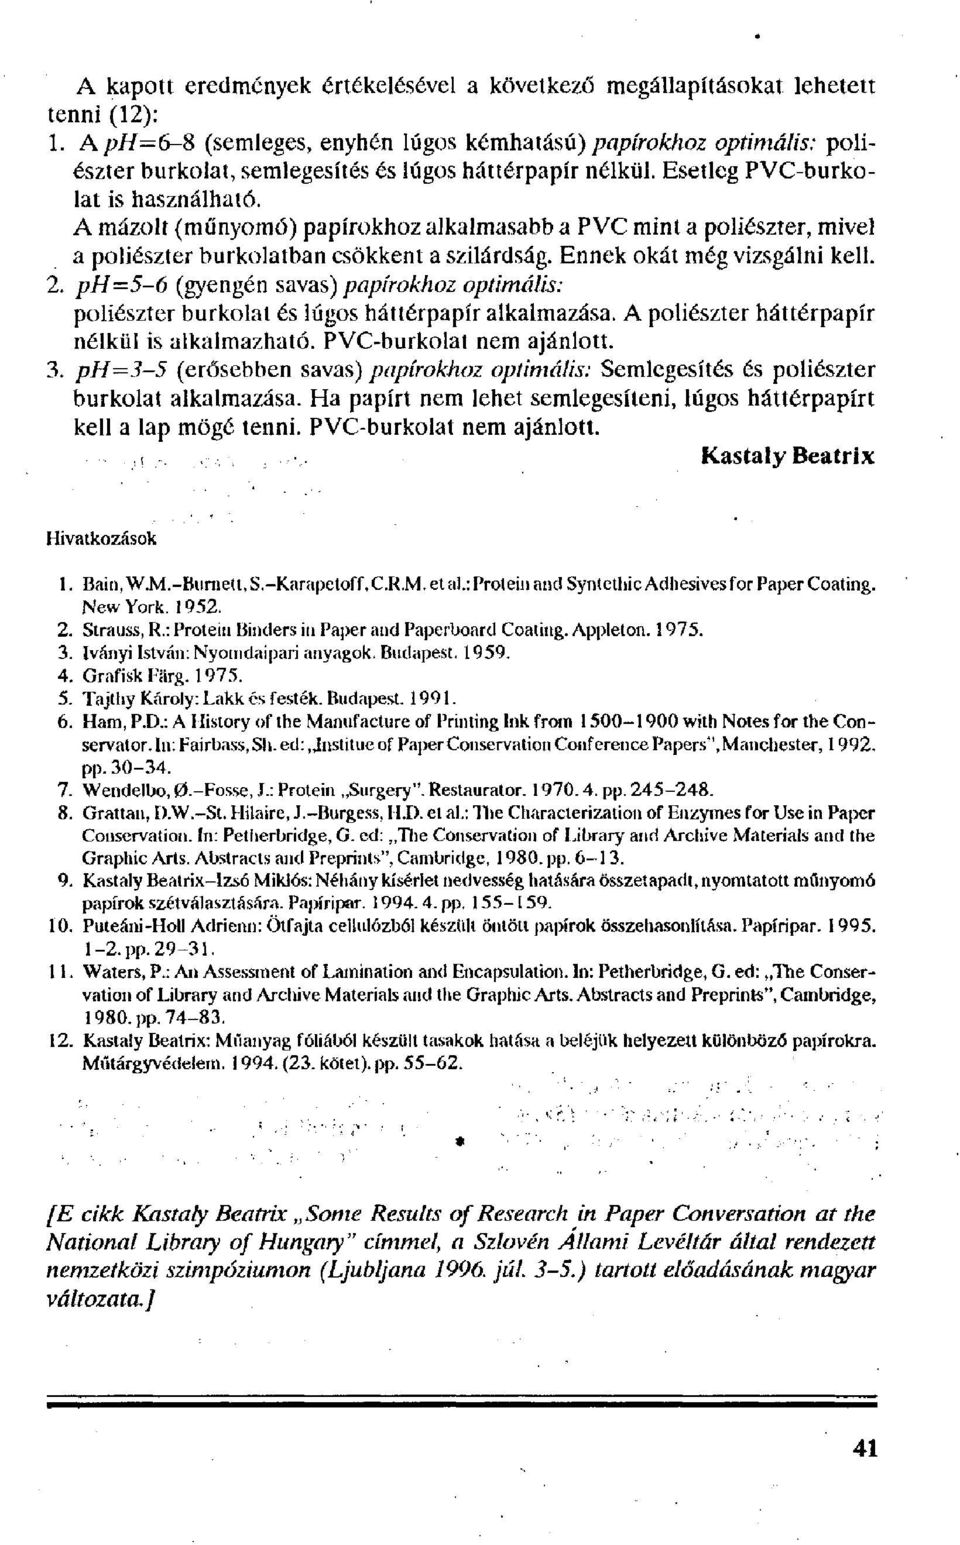 Néhány kutatási eredmény a papírrestaurálásban - PDF Ingyenes letöltés